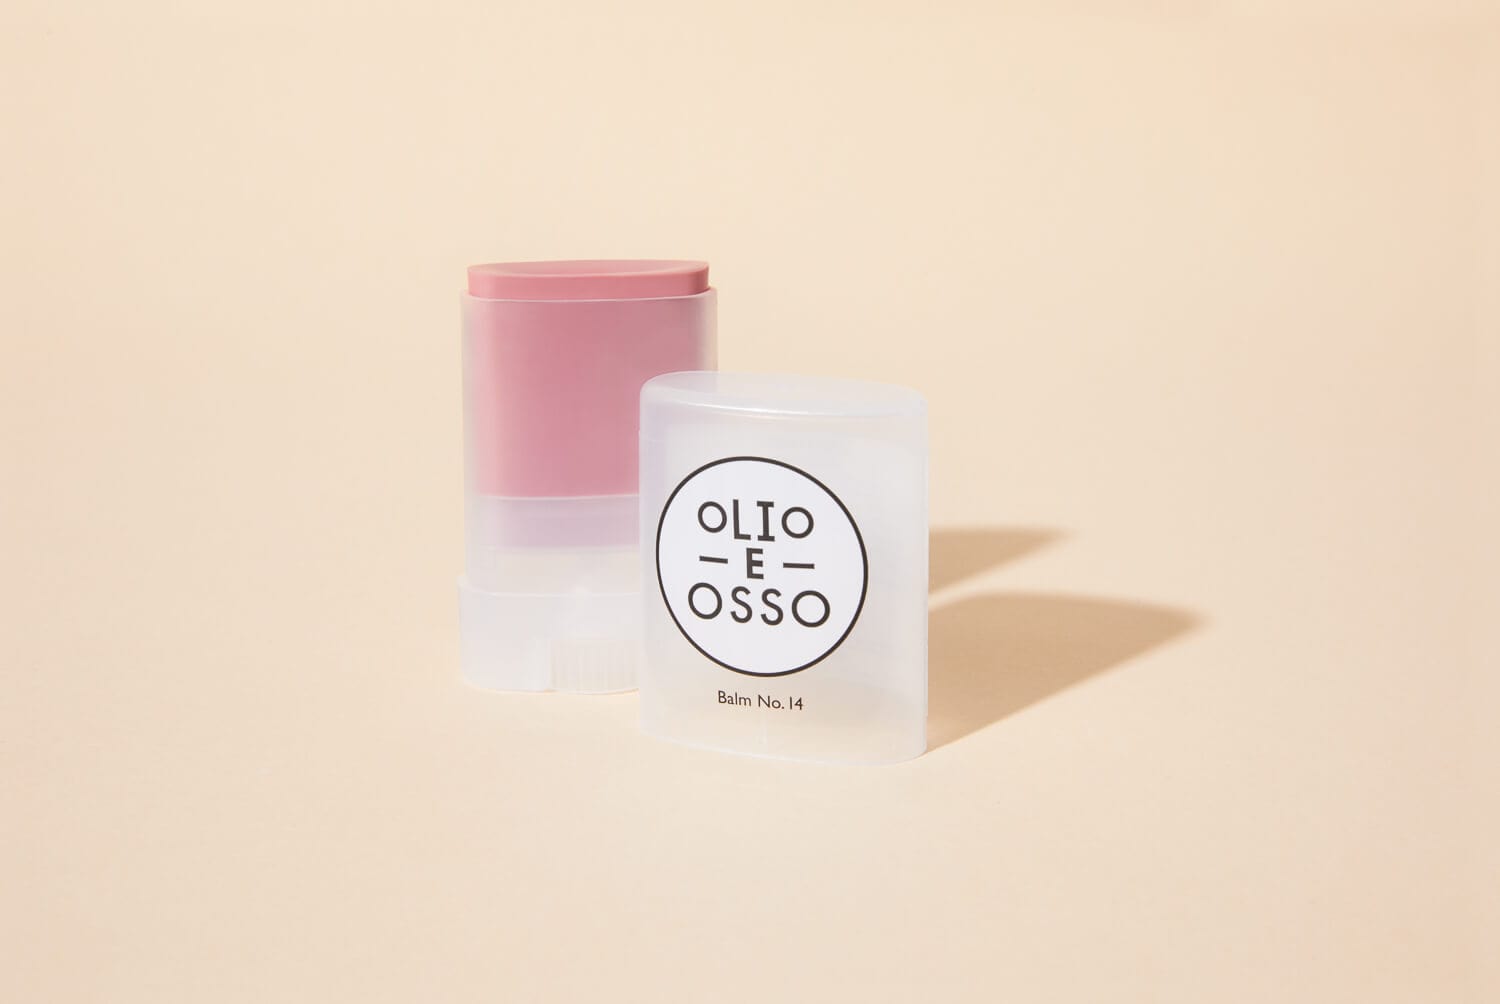 Olio e Osso multi stick No. 14 - Dusty Rose Balm Stick - Lip + Cheek Colour sunja link - canada